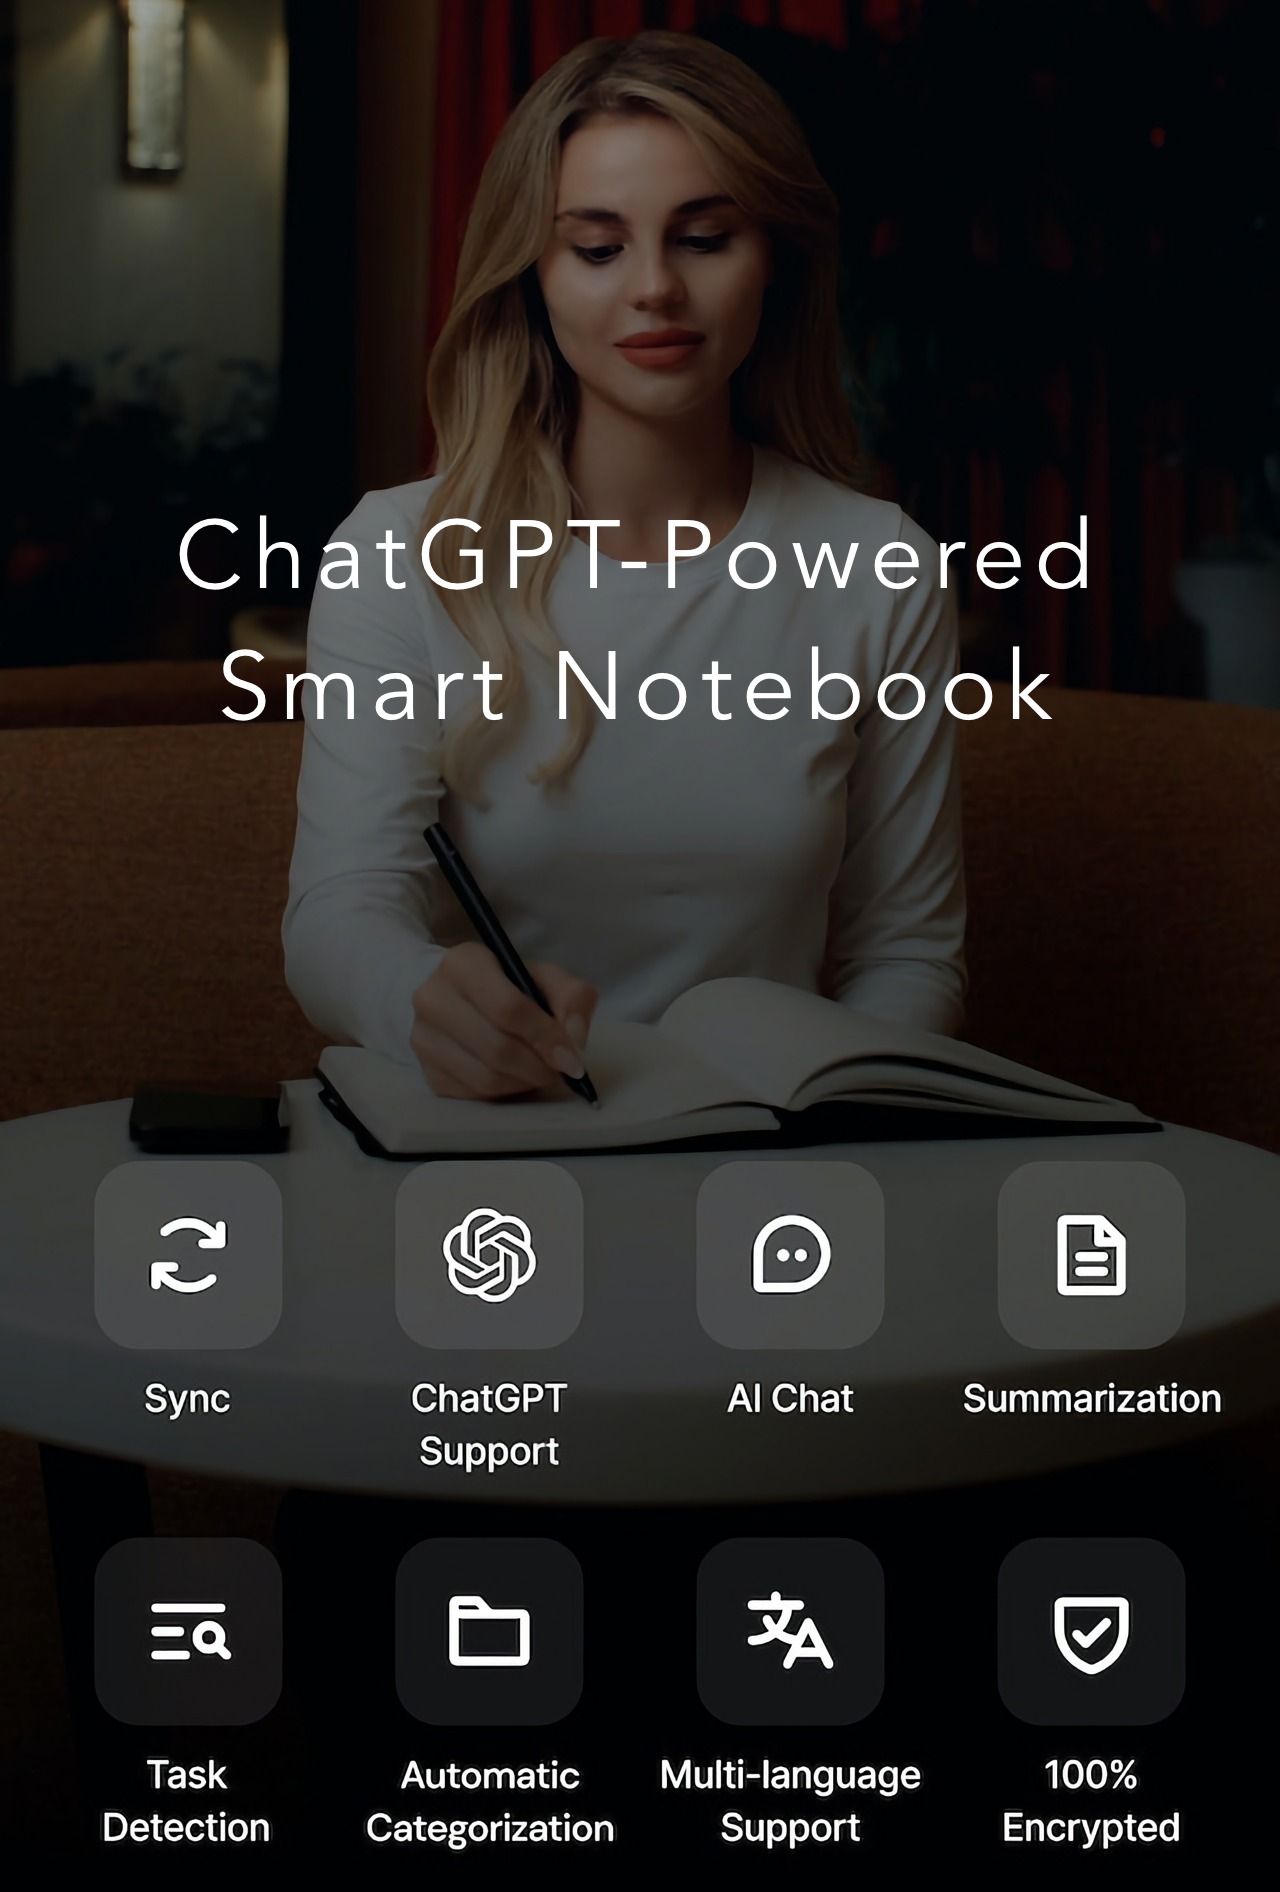 Chatgpt Powered Smart Notebook Can Summarize Handwritten Notes 1